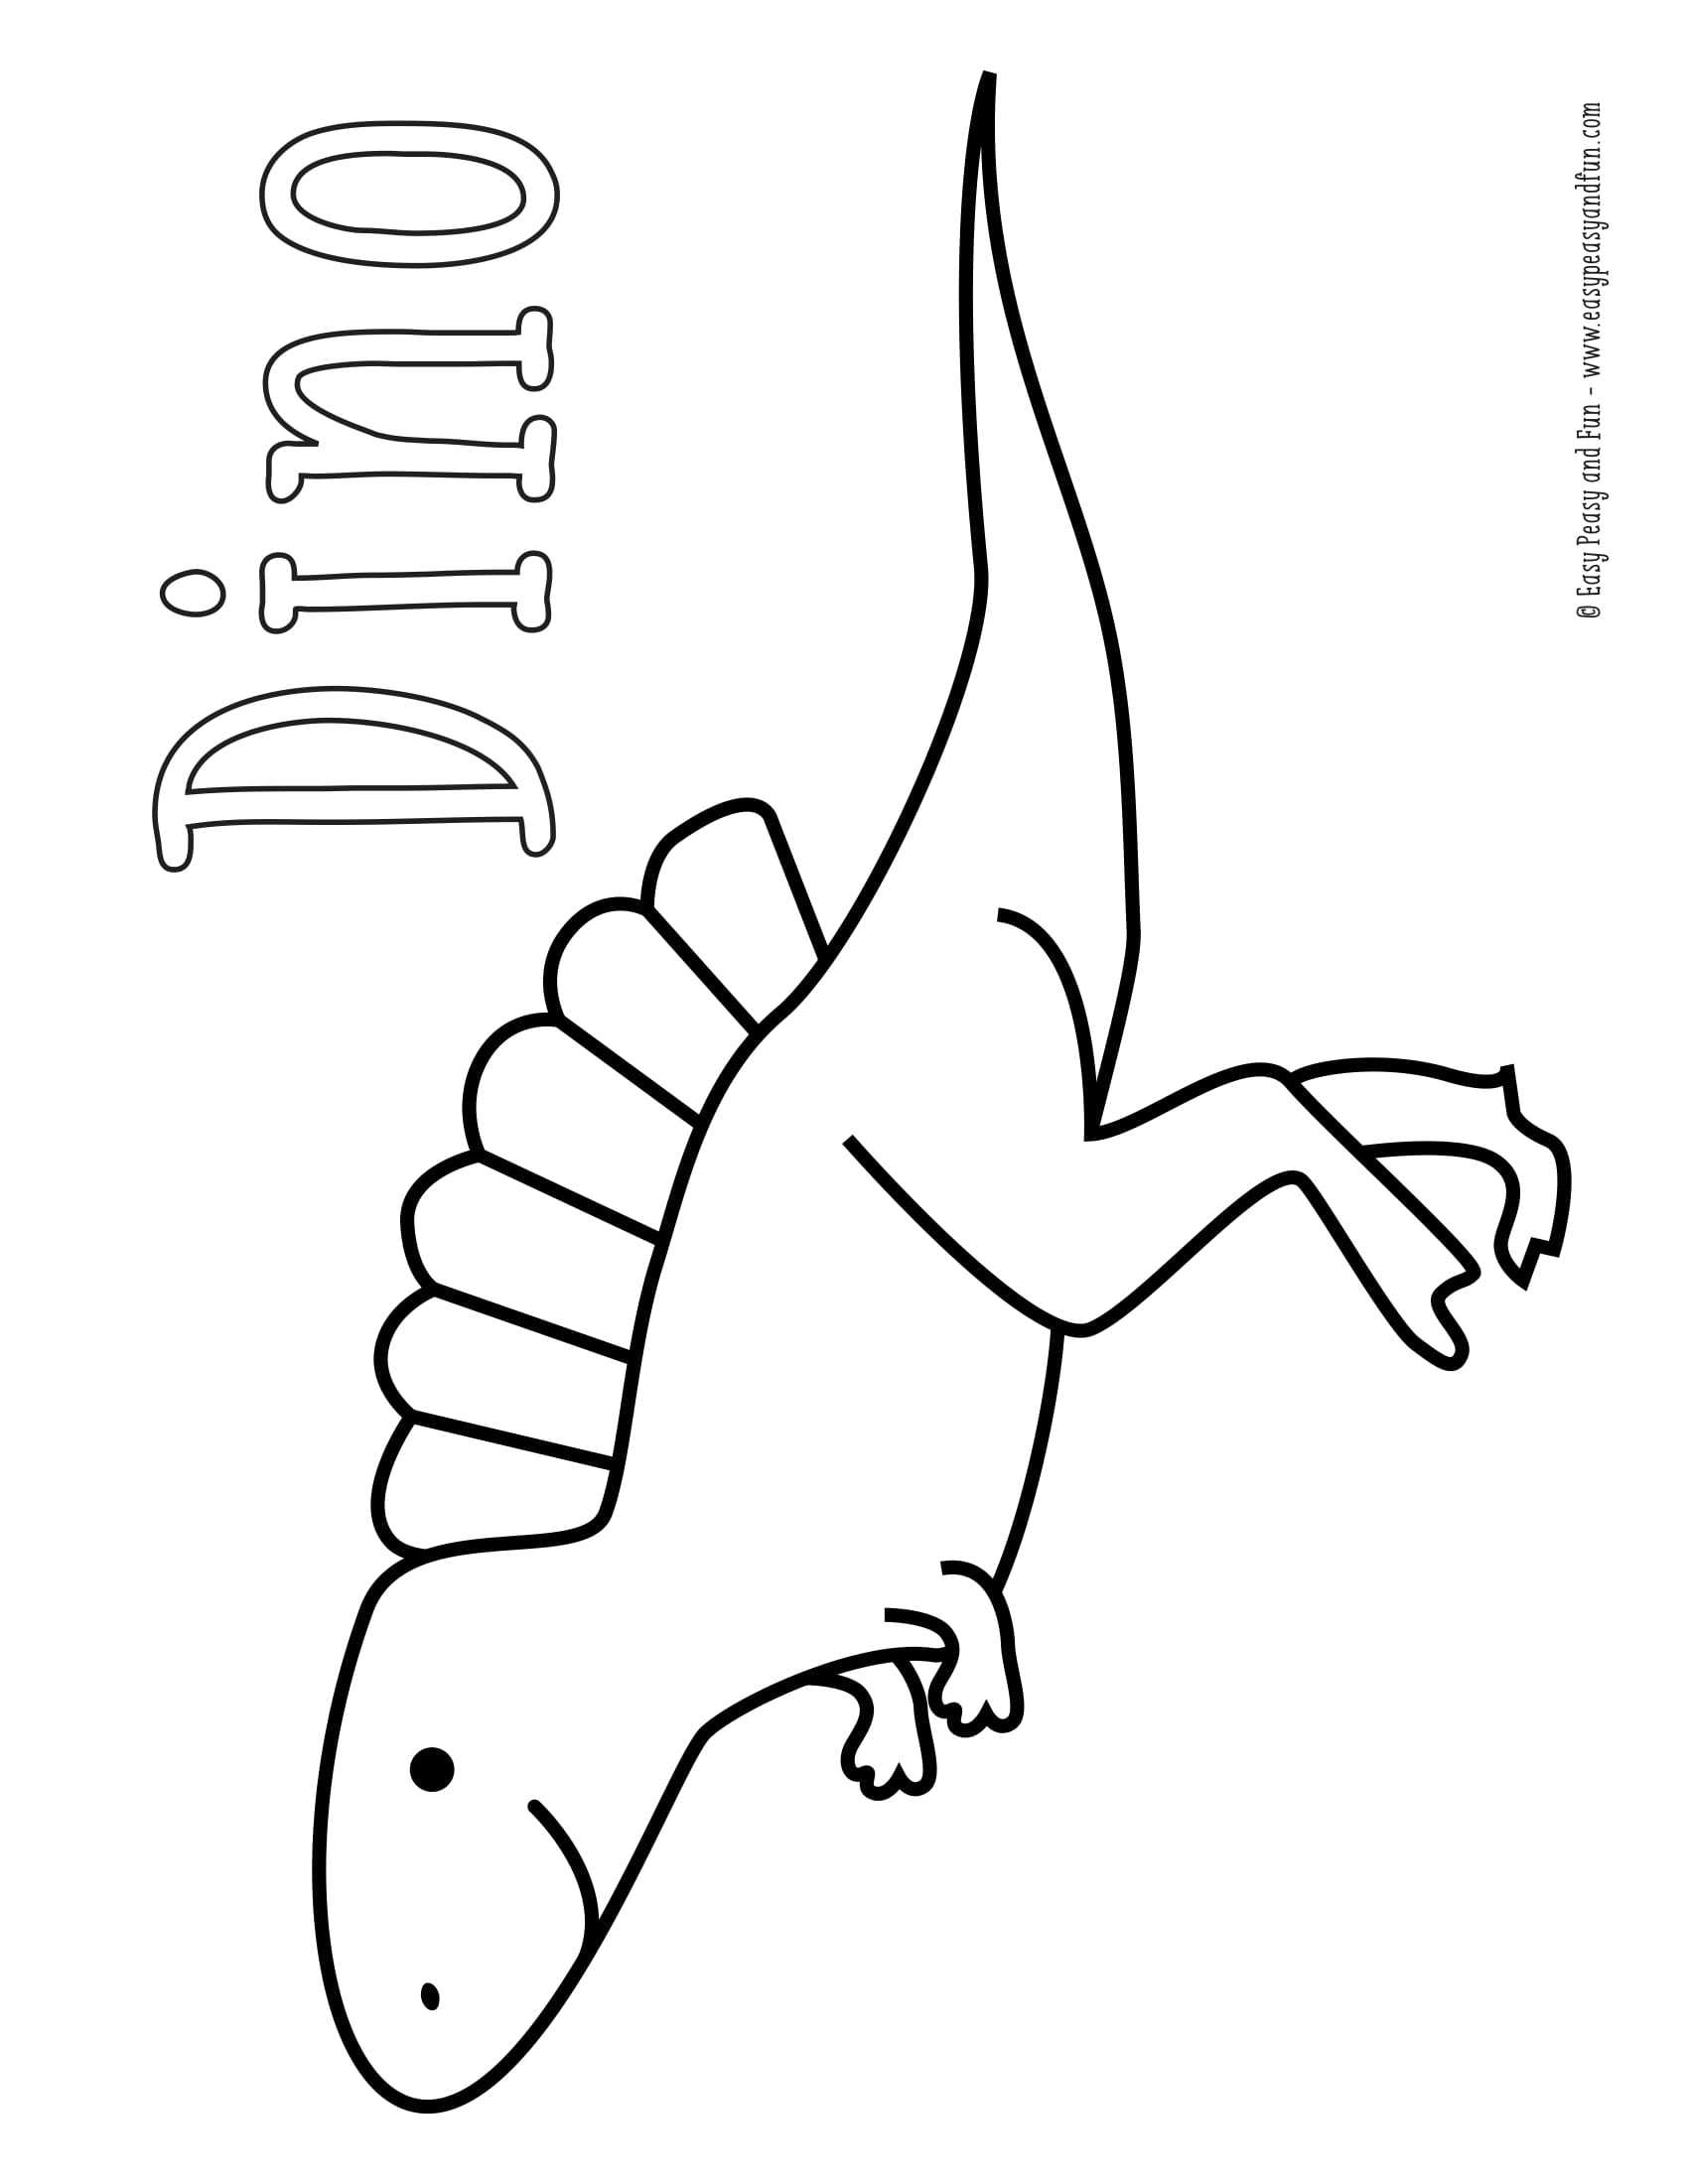 okul oncesi dinozor cesitleri boyama sayfasi (8)